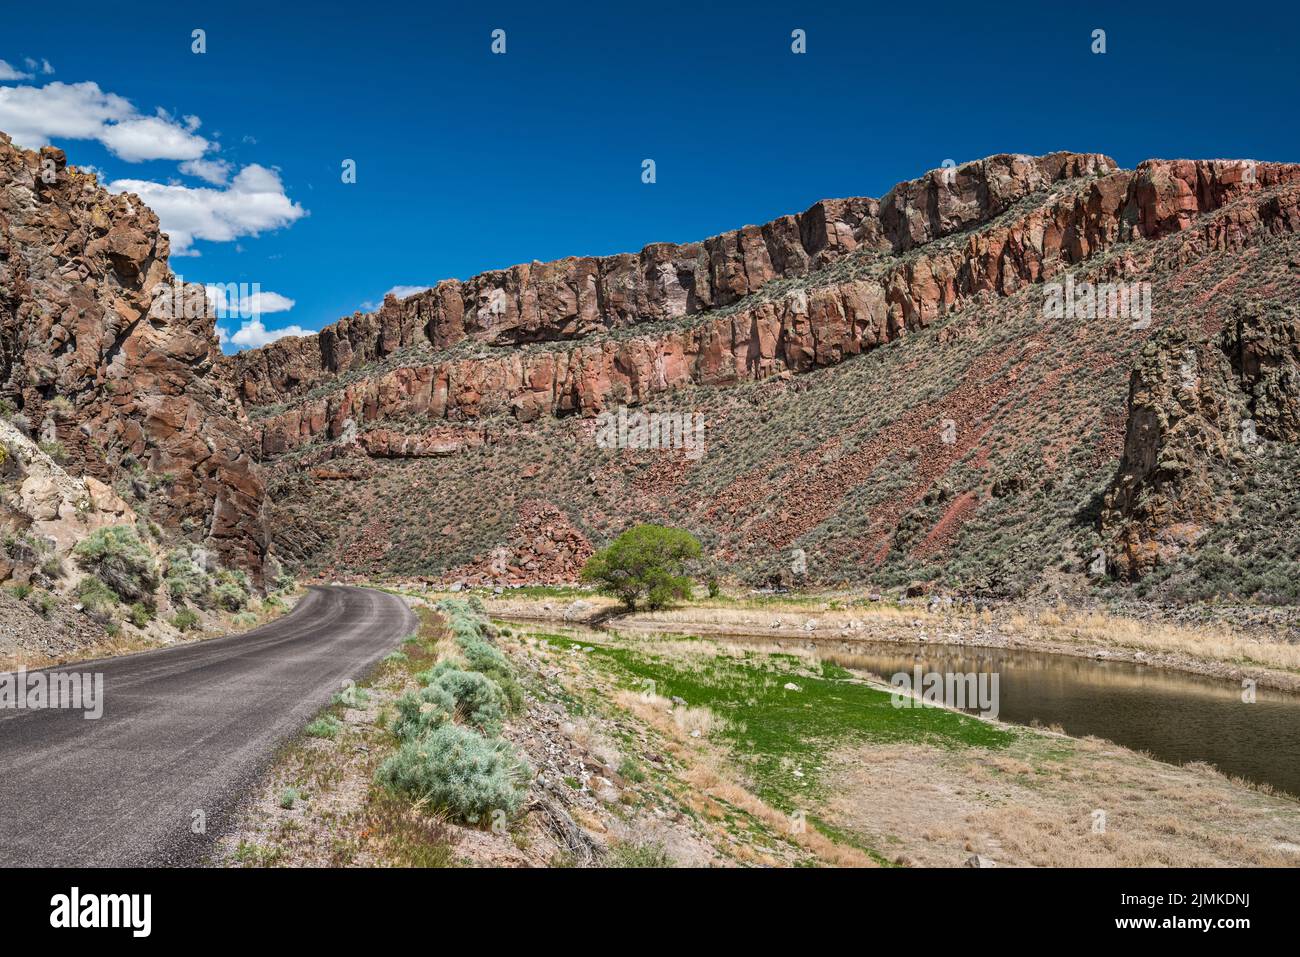 Embalse del Cañón Echo, Parque Estatal del Cañón Echo, paredes de toba volcánica, cerca de Pioche, Nevada, EE.UU Foto de stock